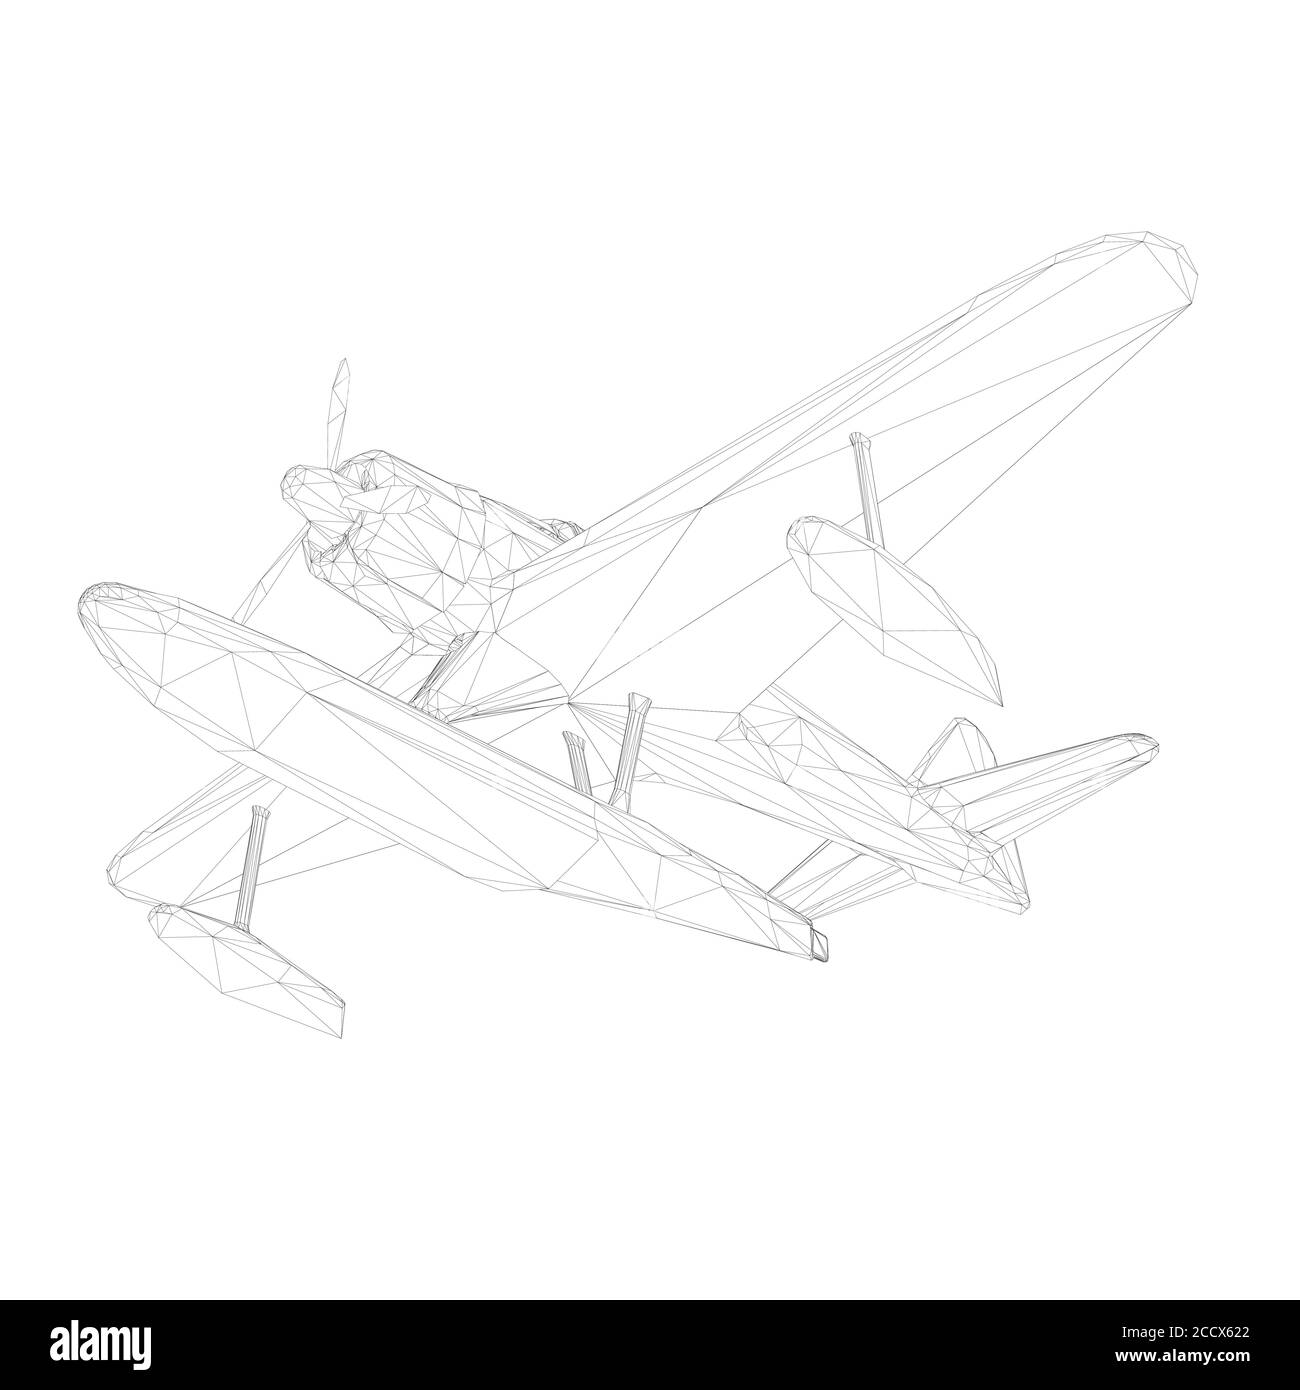 Image filaire d'un ancien plan pour l'atterrissage et le décollage de l'eau. Vue de dessous. 3D. Illustration vectorielle Illustration de Vecteur